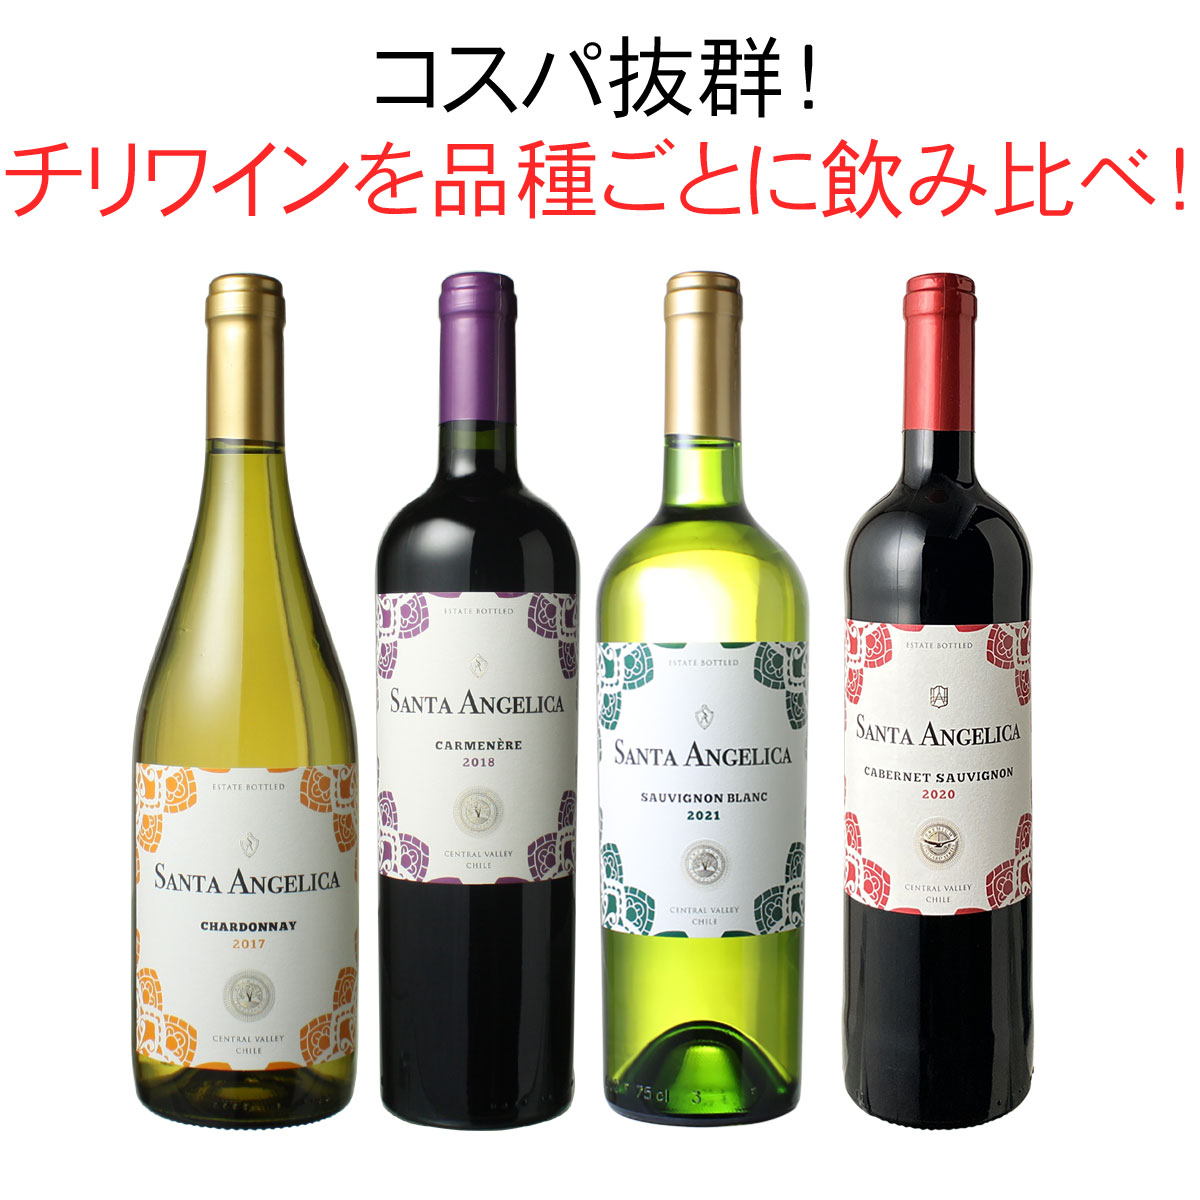 【送料無料】ワインセット チリ ワイン 品種 飲み比べ 4本 セット 第1